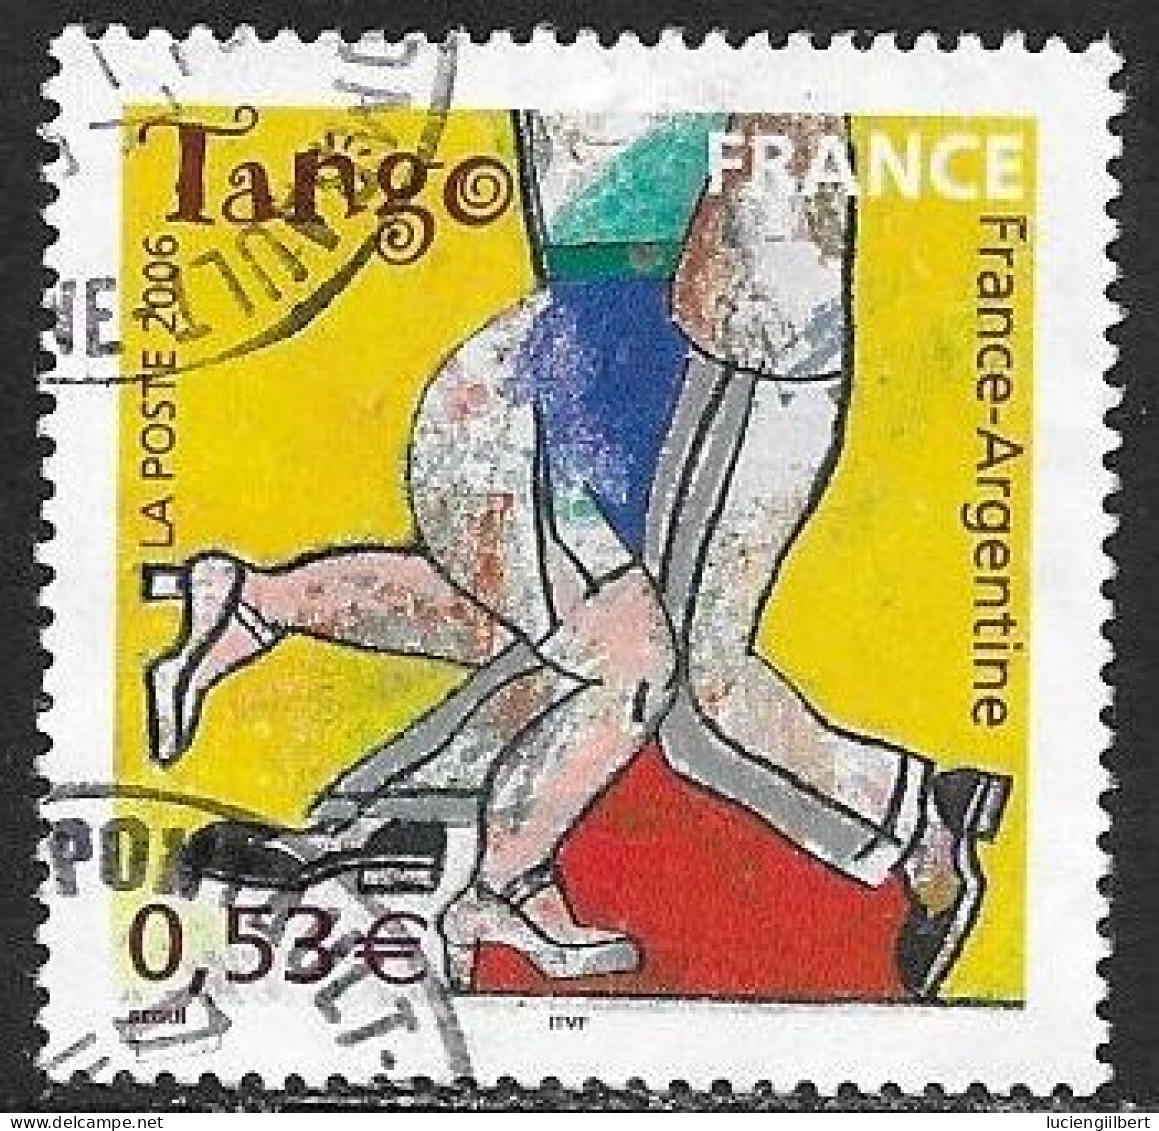 TIMBRE N° 3932 -   FRANCE ARGENTINE LE TANGO       - OBLITERE  -   2006 - Oblitérés